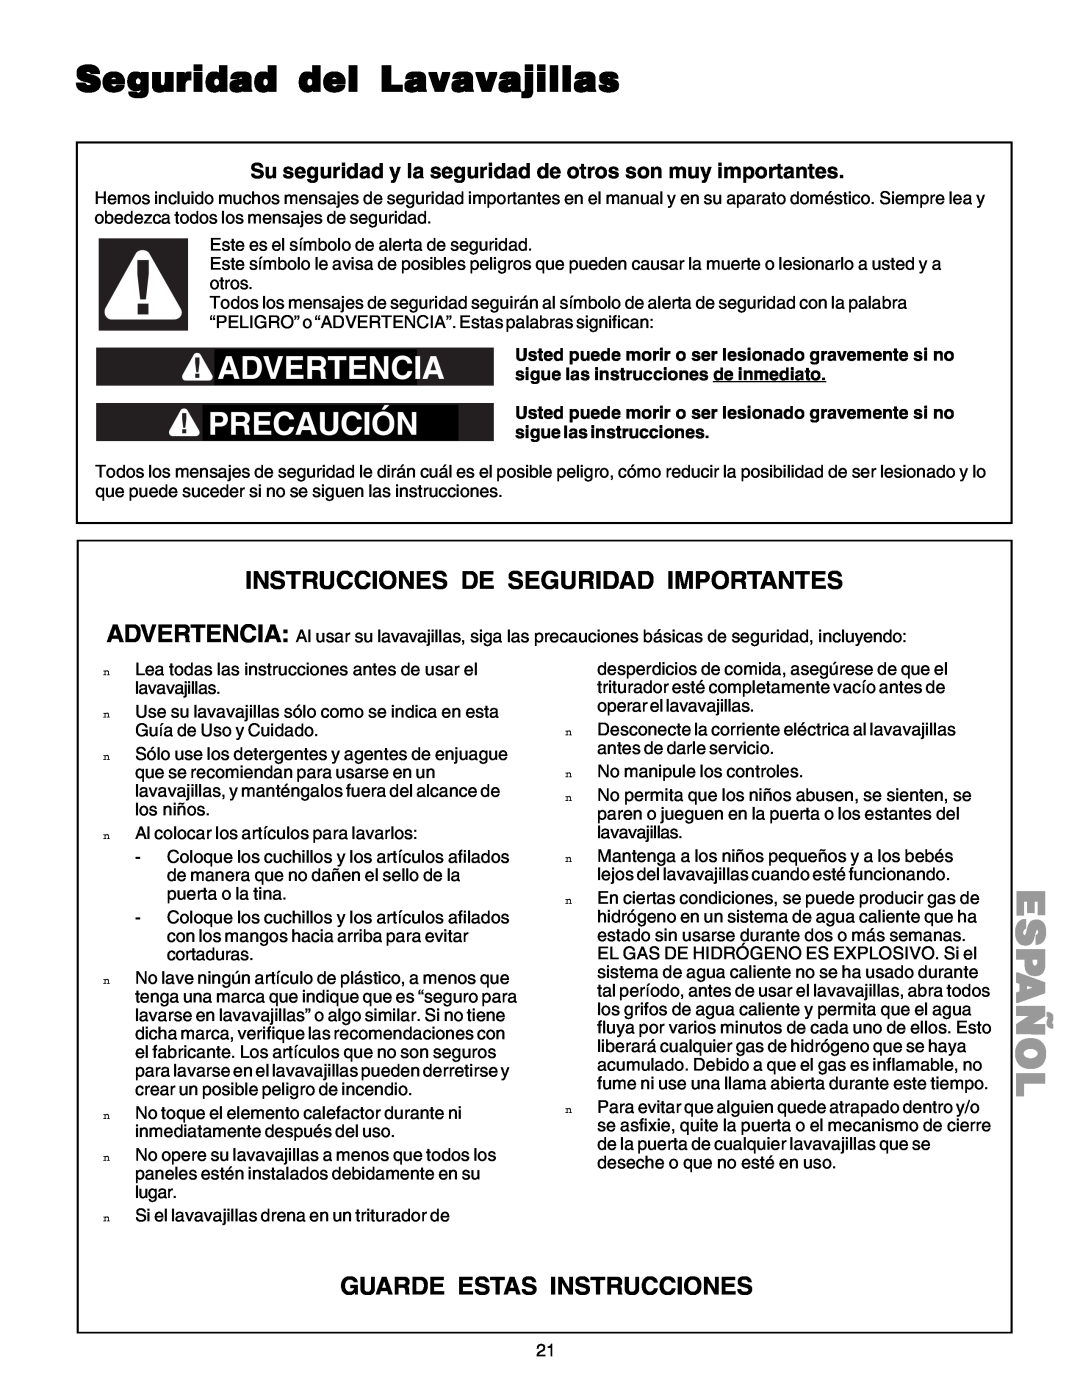 Kenmore 587.1523 manual Seguridad del Lavavajillas, Advertenc, Precau Ción, Instrucciones De Seguridad Importantes, Español 